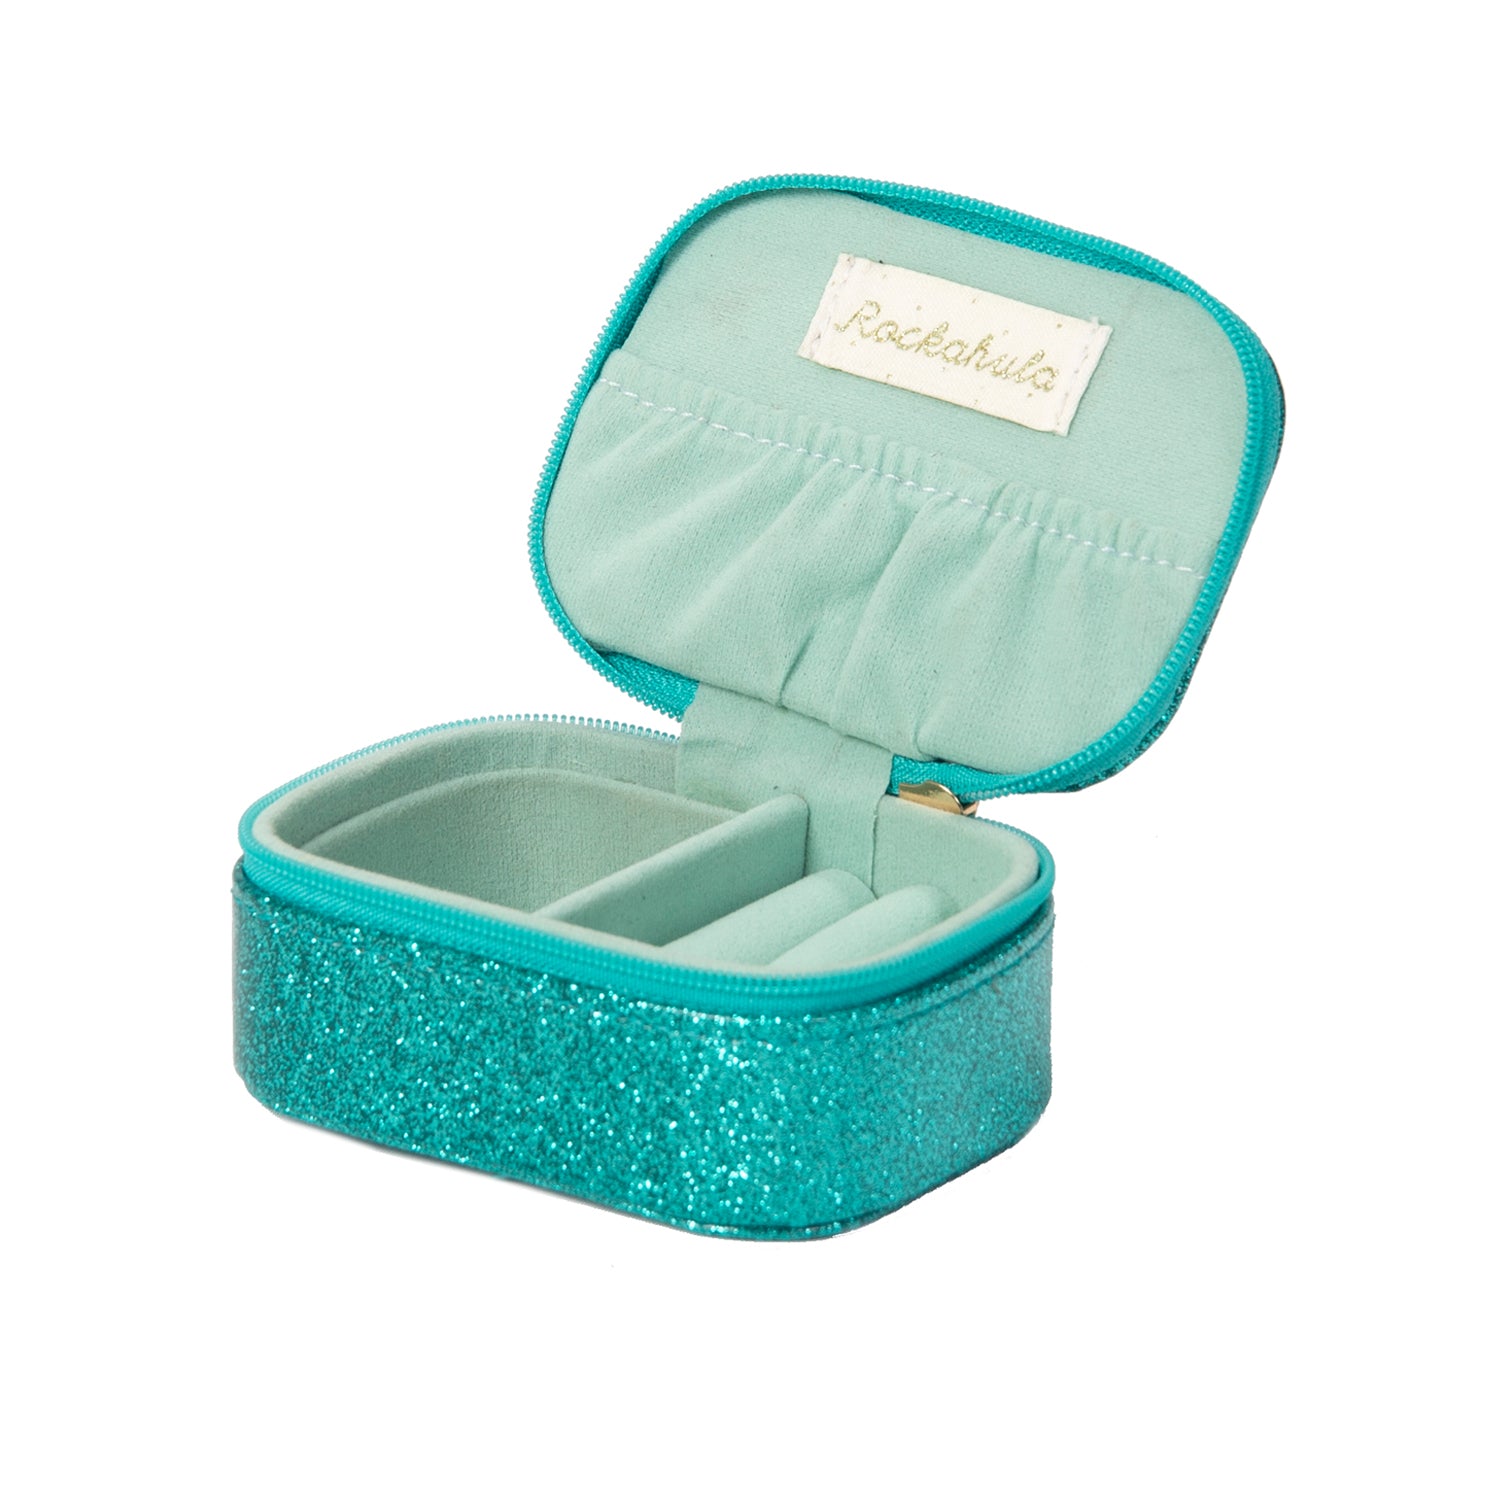 Rockahula Kids Razzle Dazzle Mini Turquoise Jewellery Box